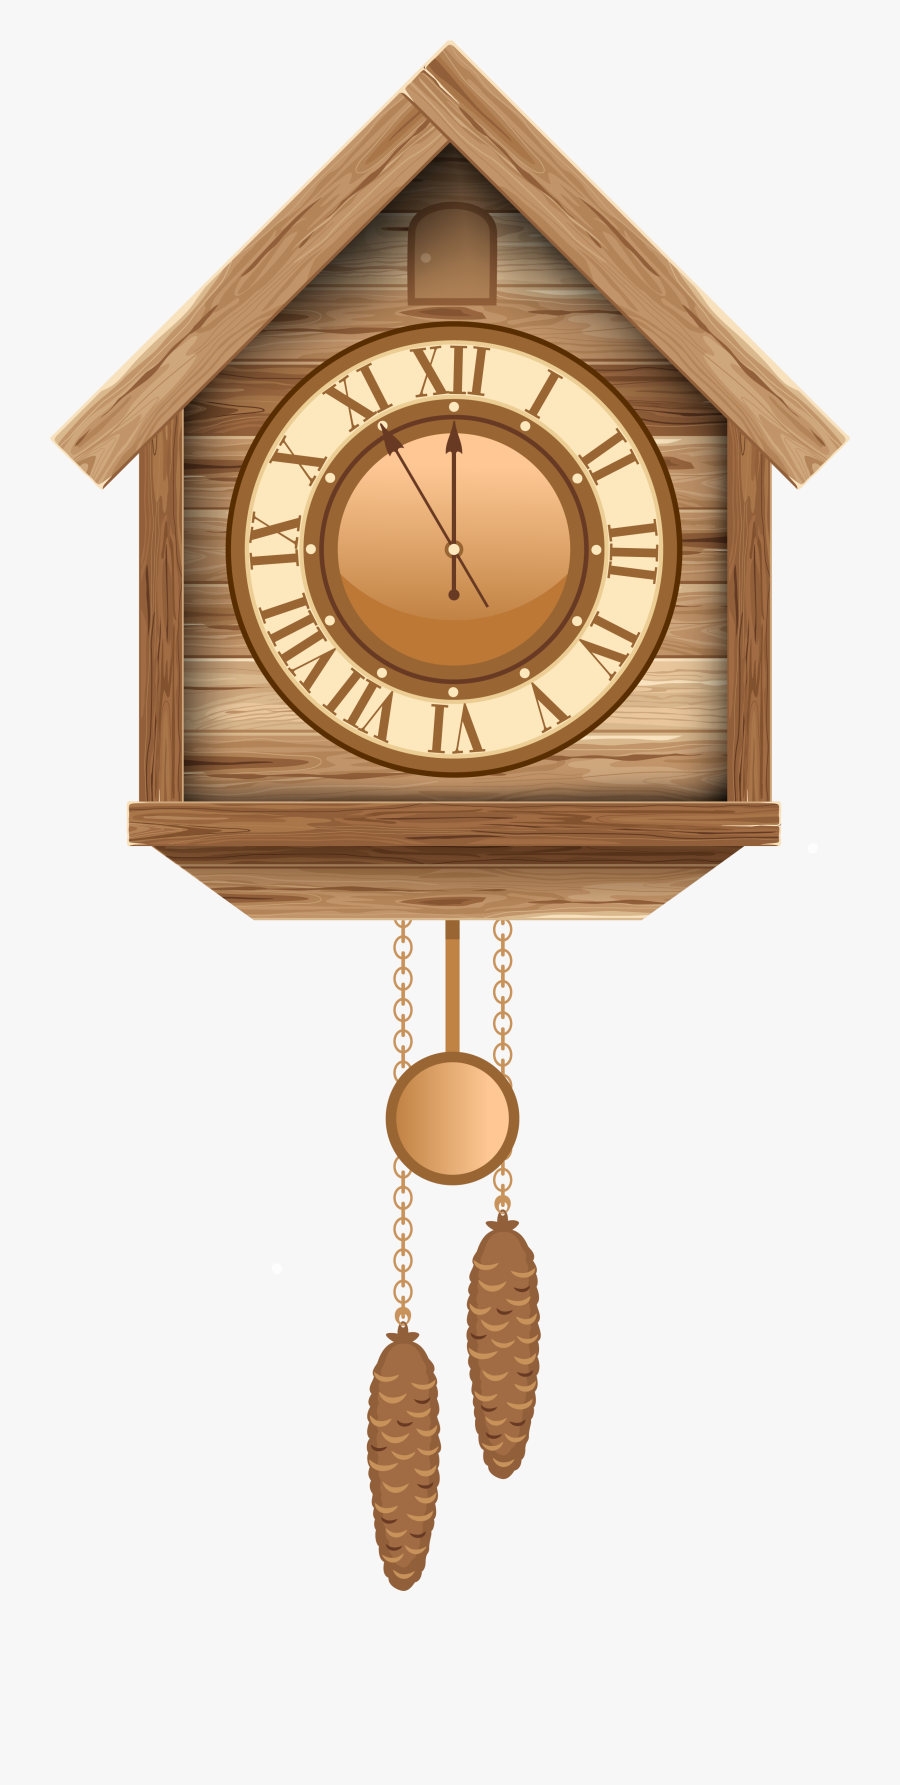 Cuckoo Clock Png Clip Art - Wall Clock Png Christmas, Transparent Clipart